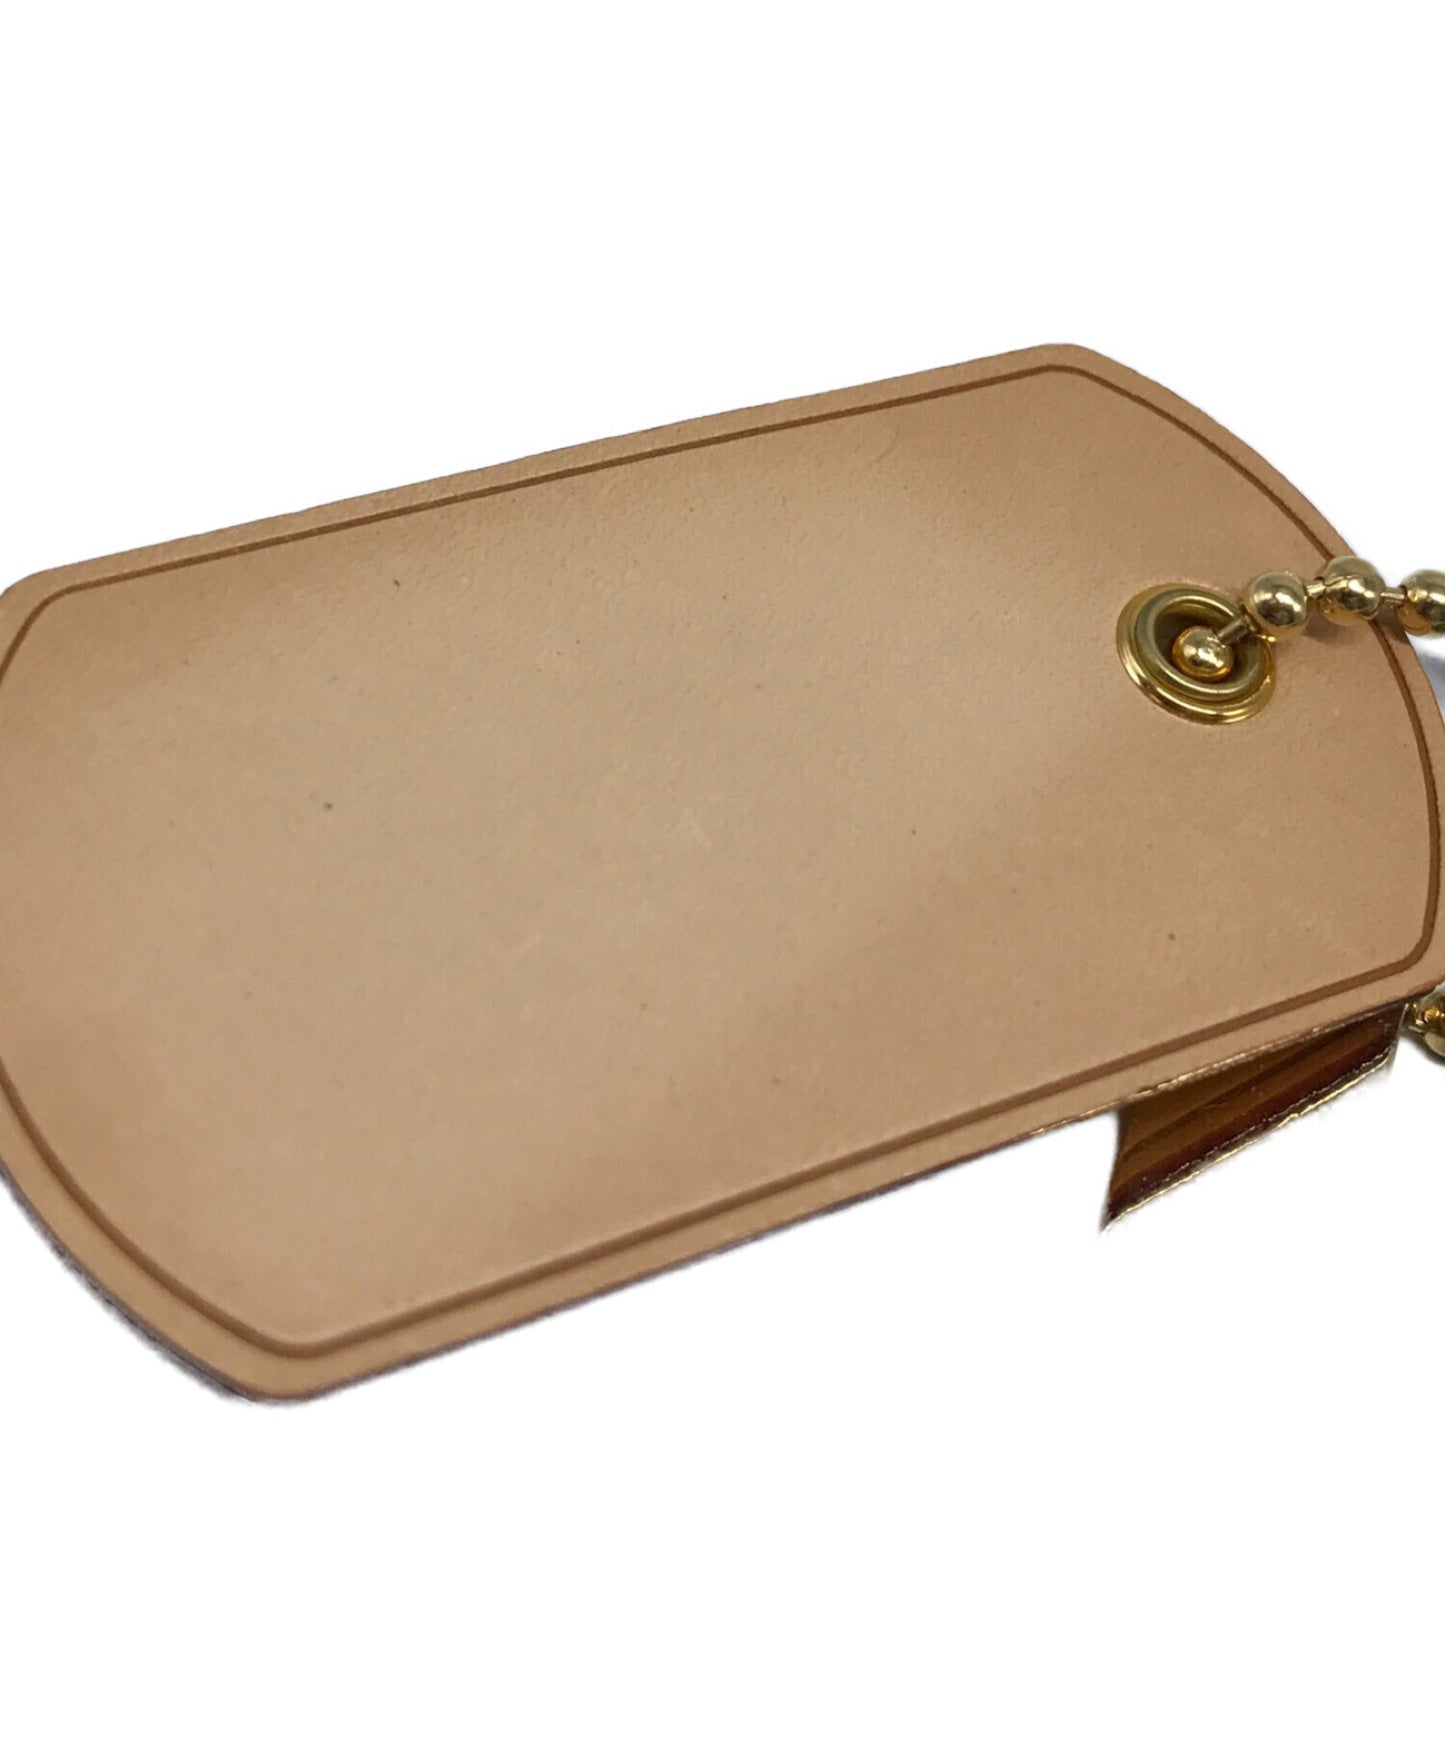 路易威登takashi村里有限公司Bijoux SAC Monogramoflage Bag Charm M65635